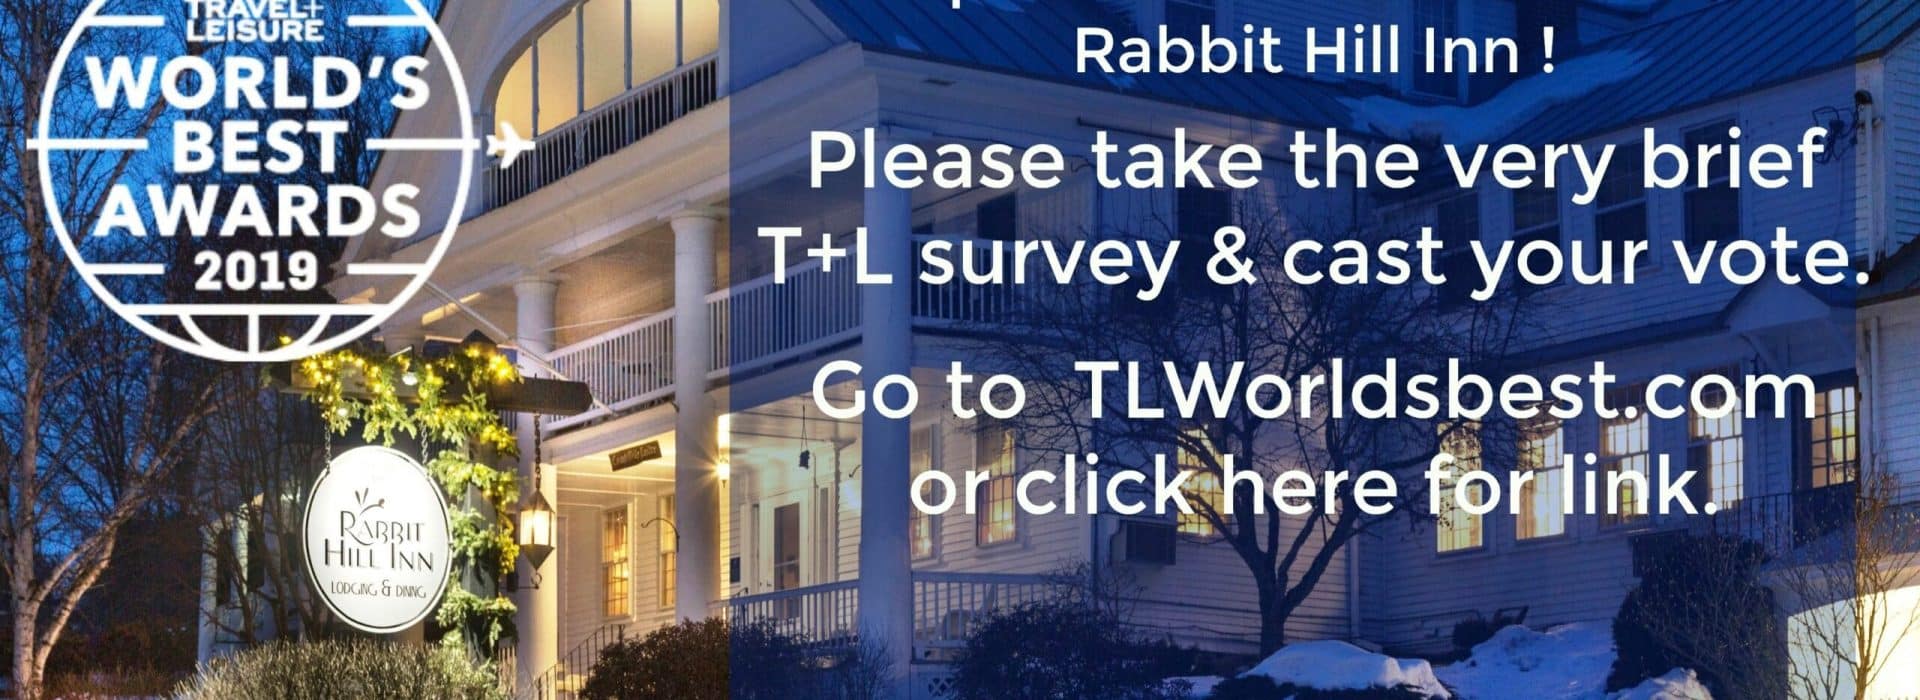 |T+L Travel Survey|